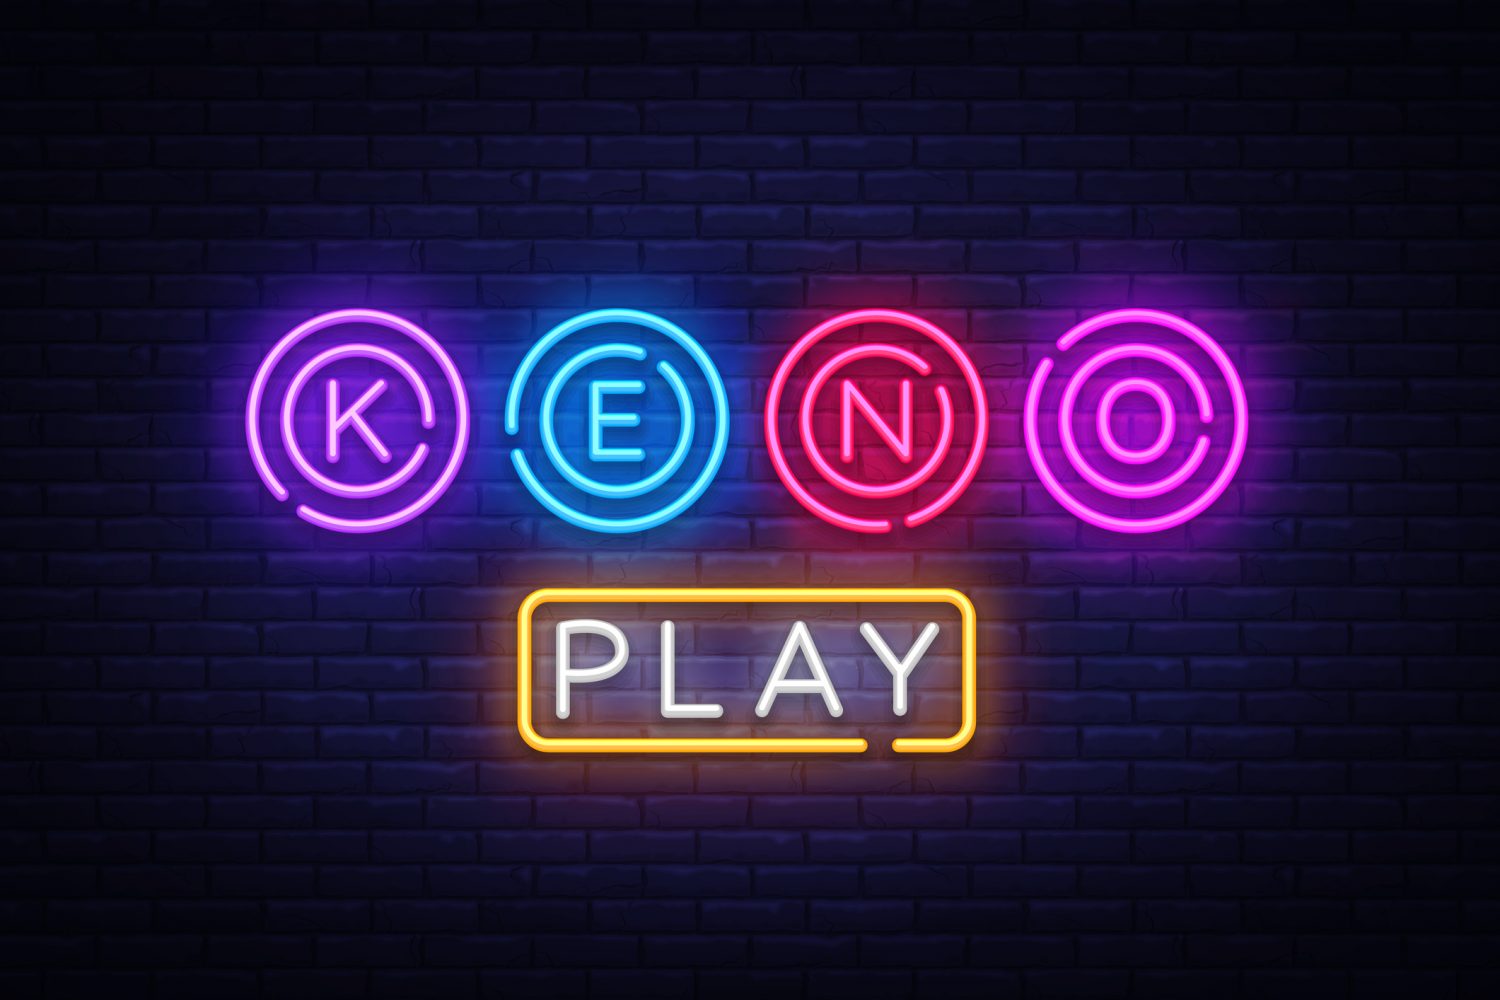 Keno Poker